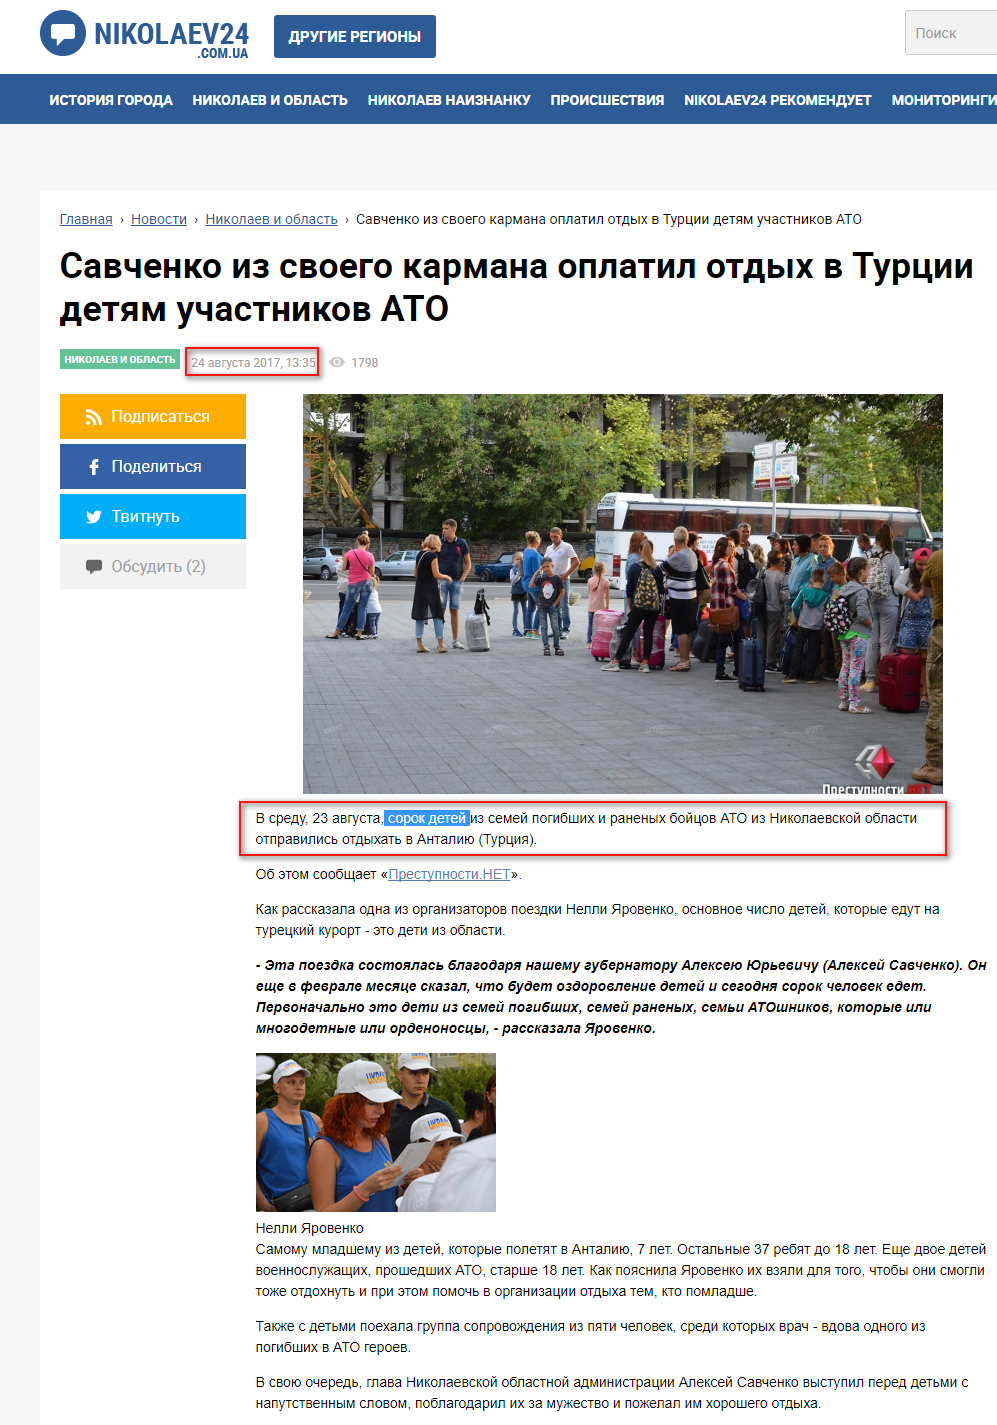 http://nikolaev24.com.ua/news/savchenko-iz-svoego-karmana-oplatil-otdyh-v-turtsii-detjam-uchastnikov-ato